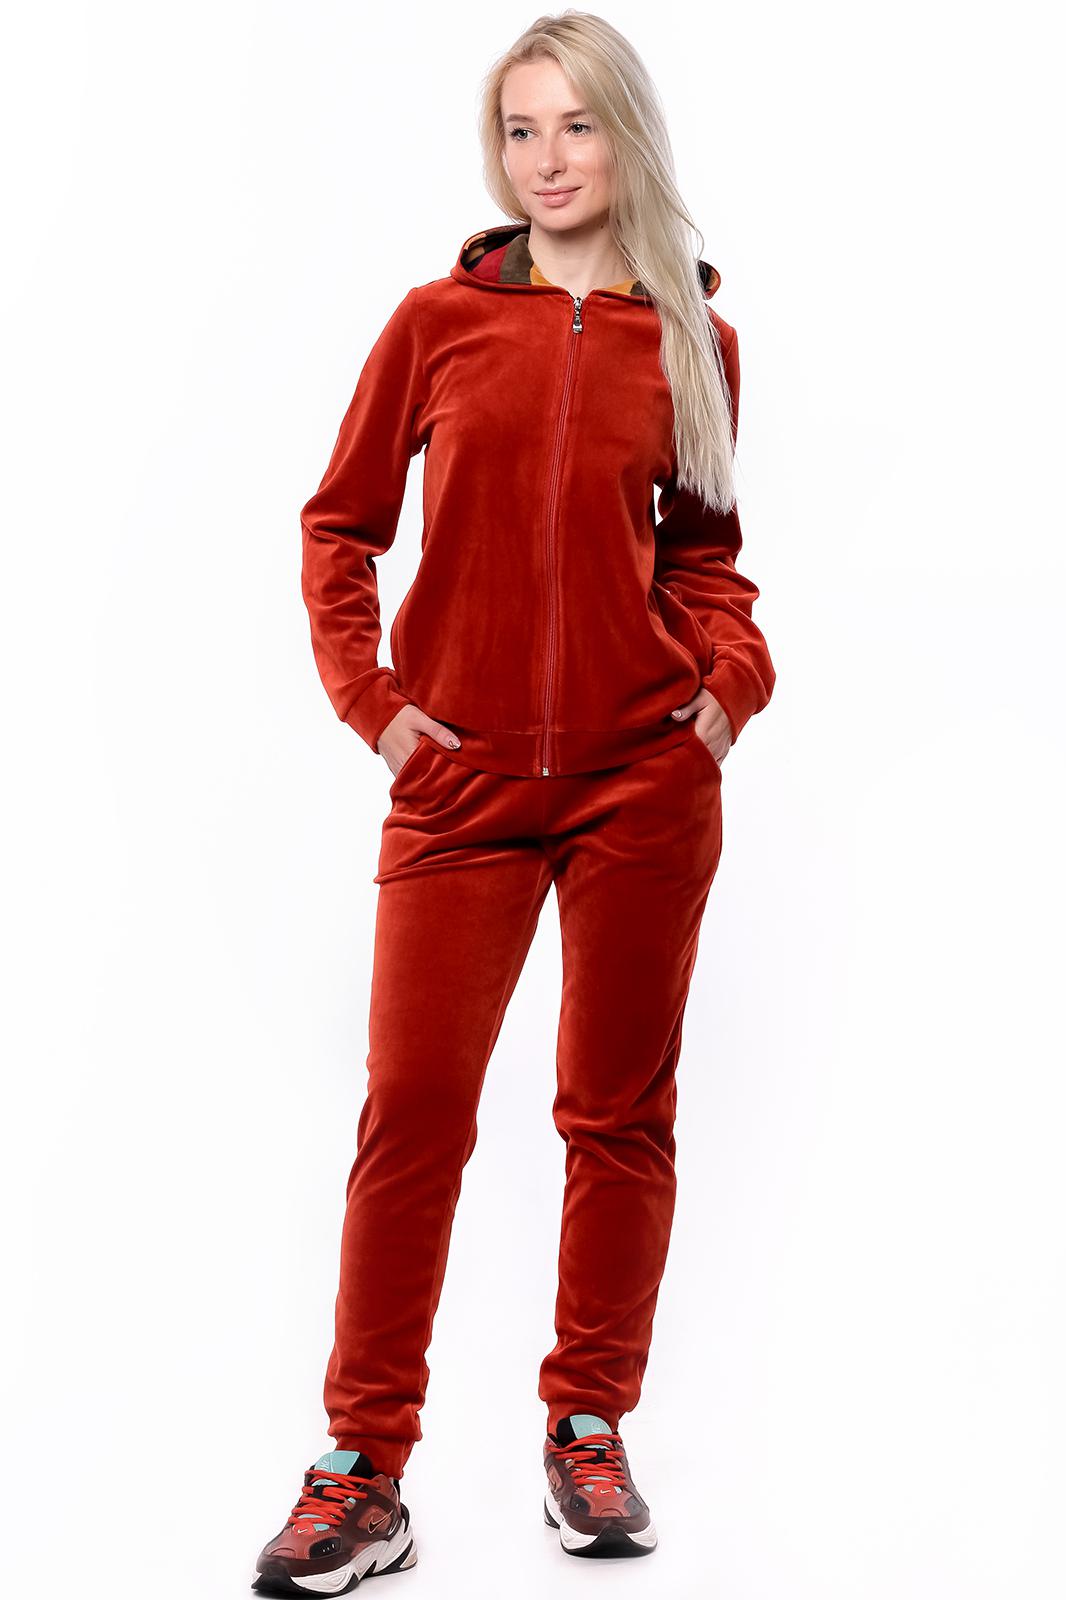 Купить спортивный костюм женский на озоне недорого. Красный велюровый костюм. Красный велюровый спорт костюм. Спортивный костюм бордового цвета. Костюм из велюра красный женский.